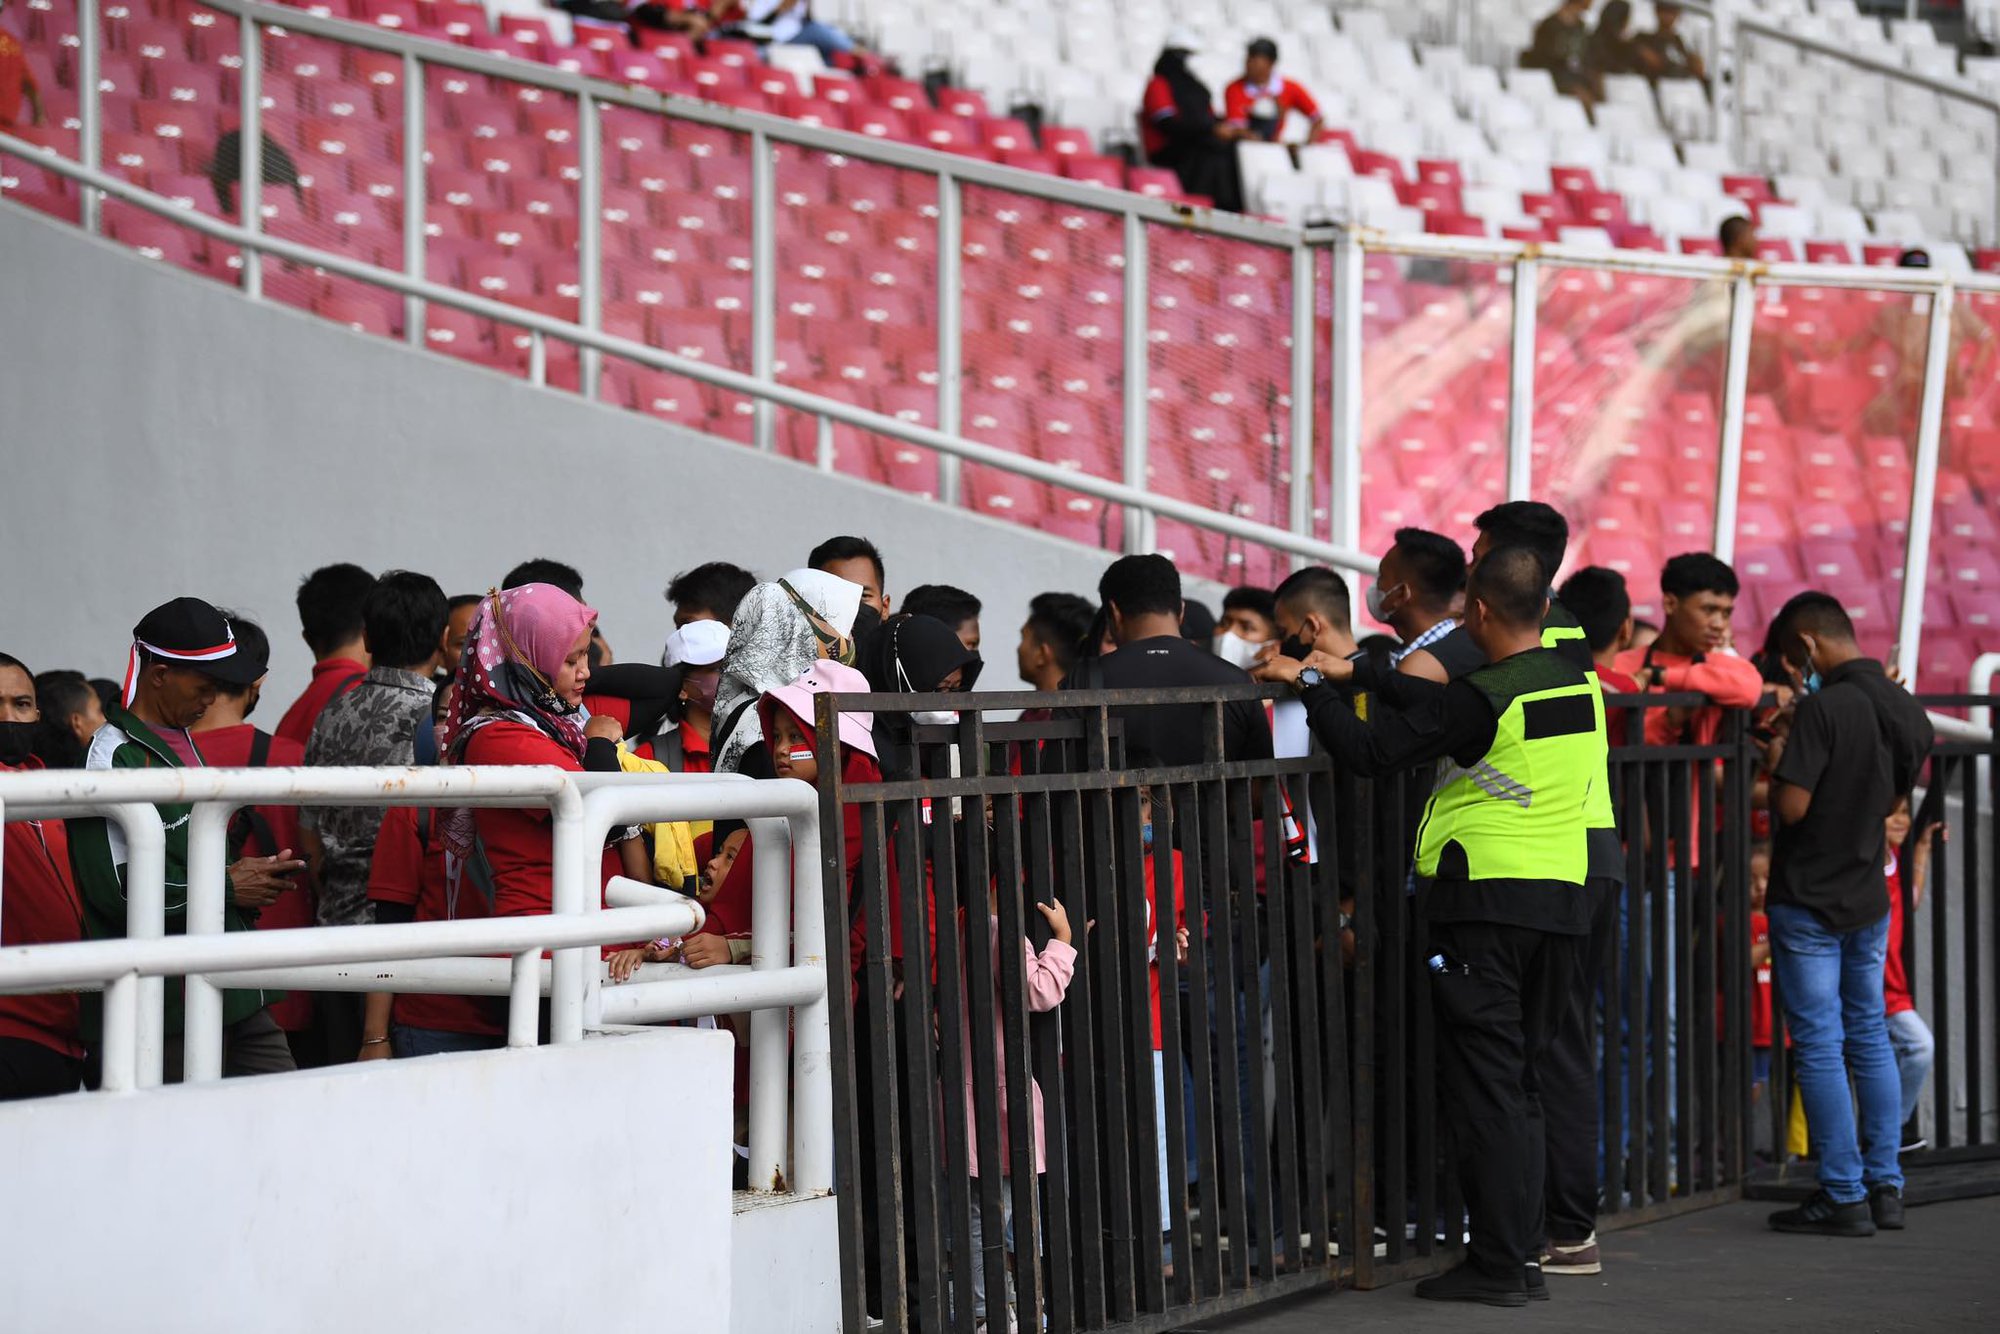 Đội tuyển Việt Nam được hộ tống đến sân, an ninh siết chặt trước trận bán kết - Ảnh 6.